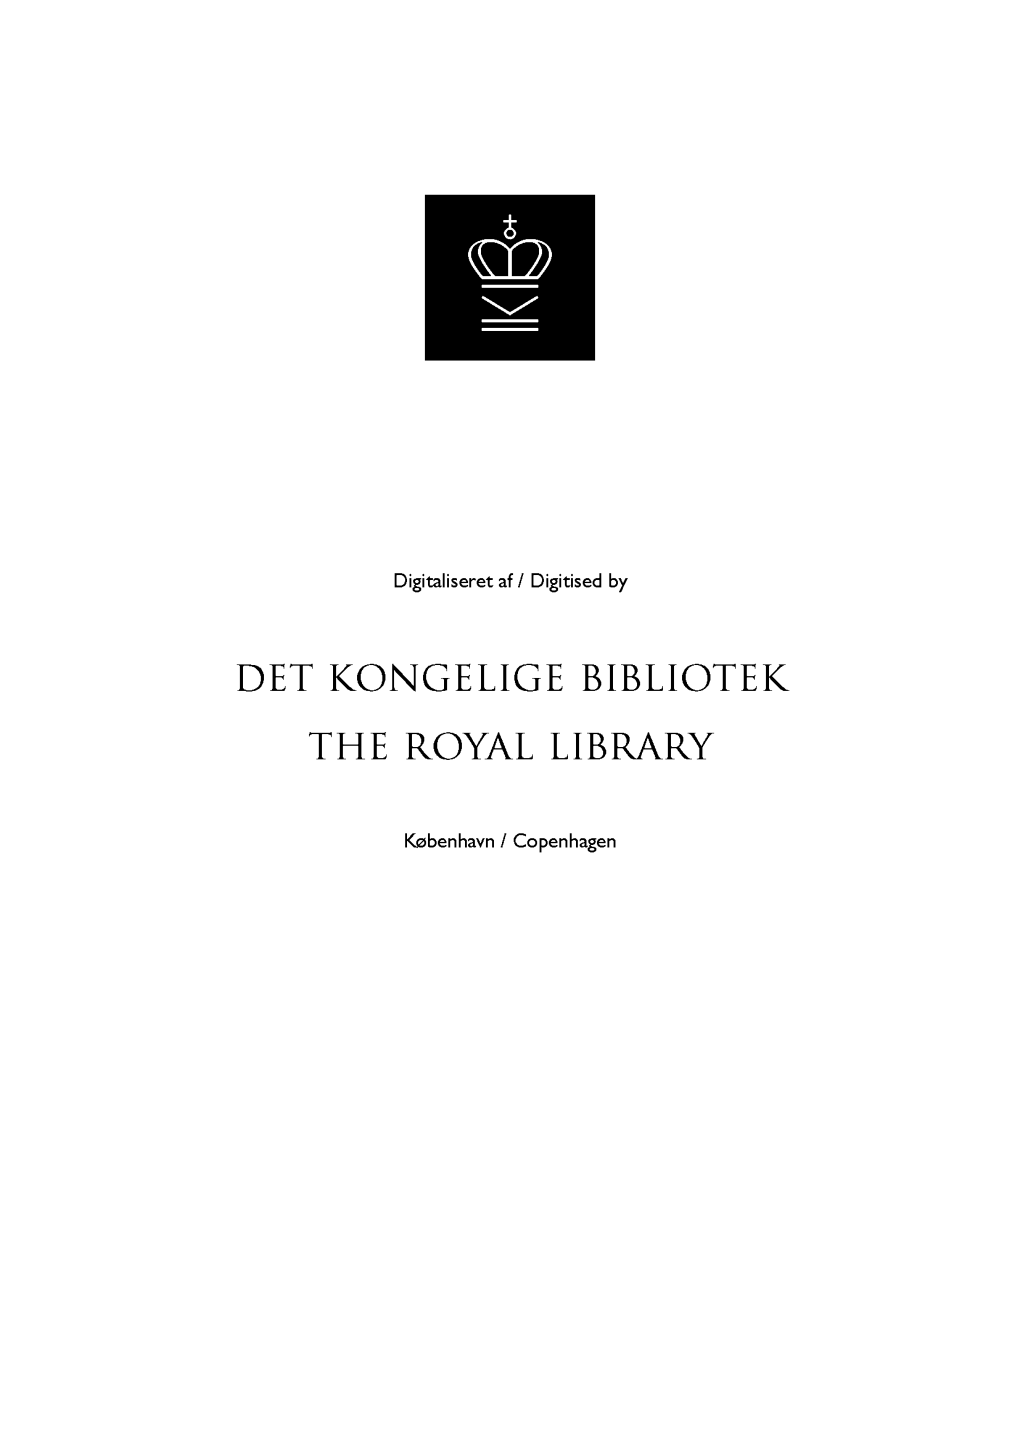 Det Kongelige Bibliotek 130021678611